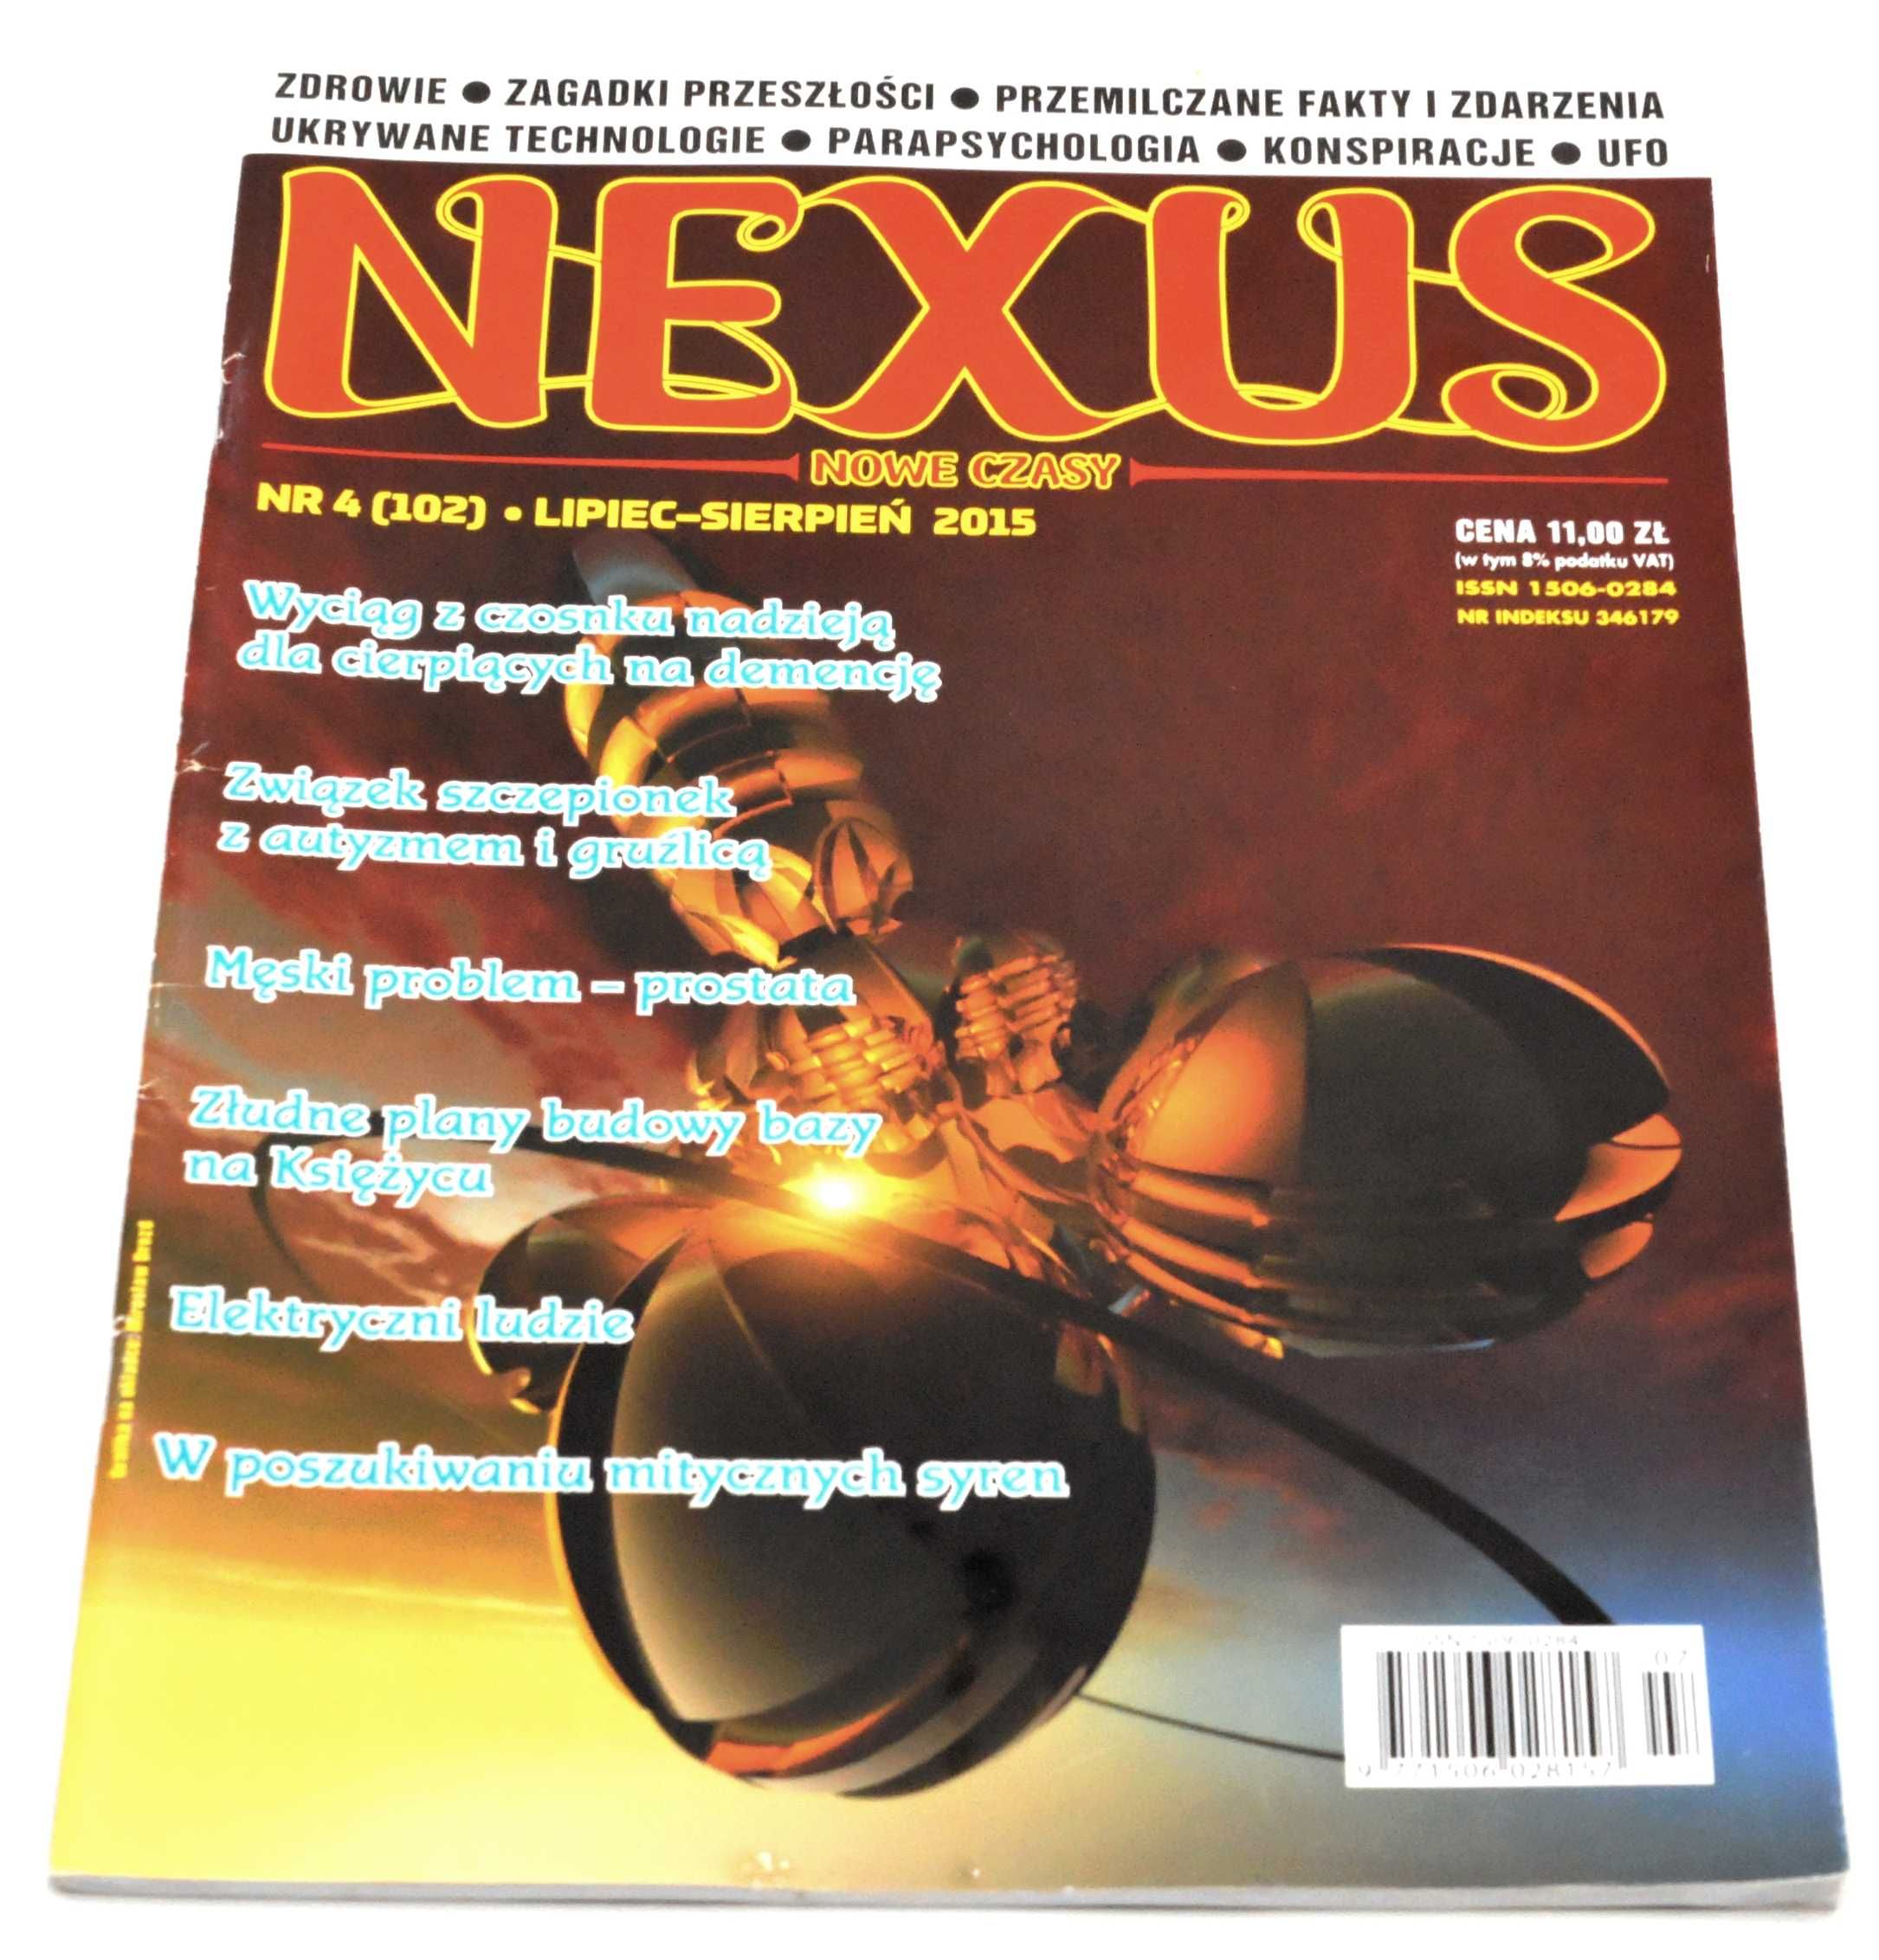 Nexus Nr 4 (102) Lipiec-Sierpień 2015